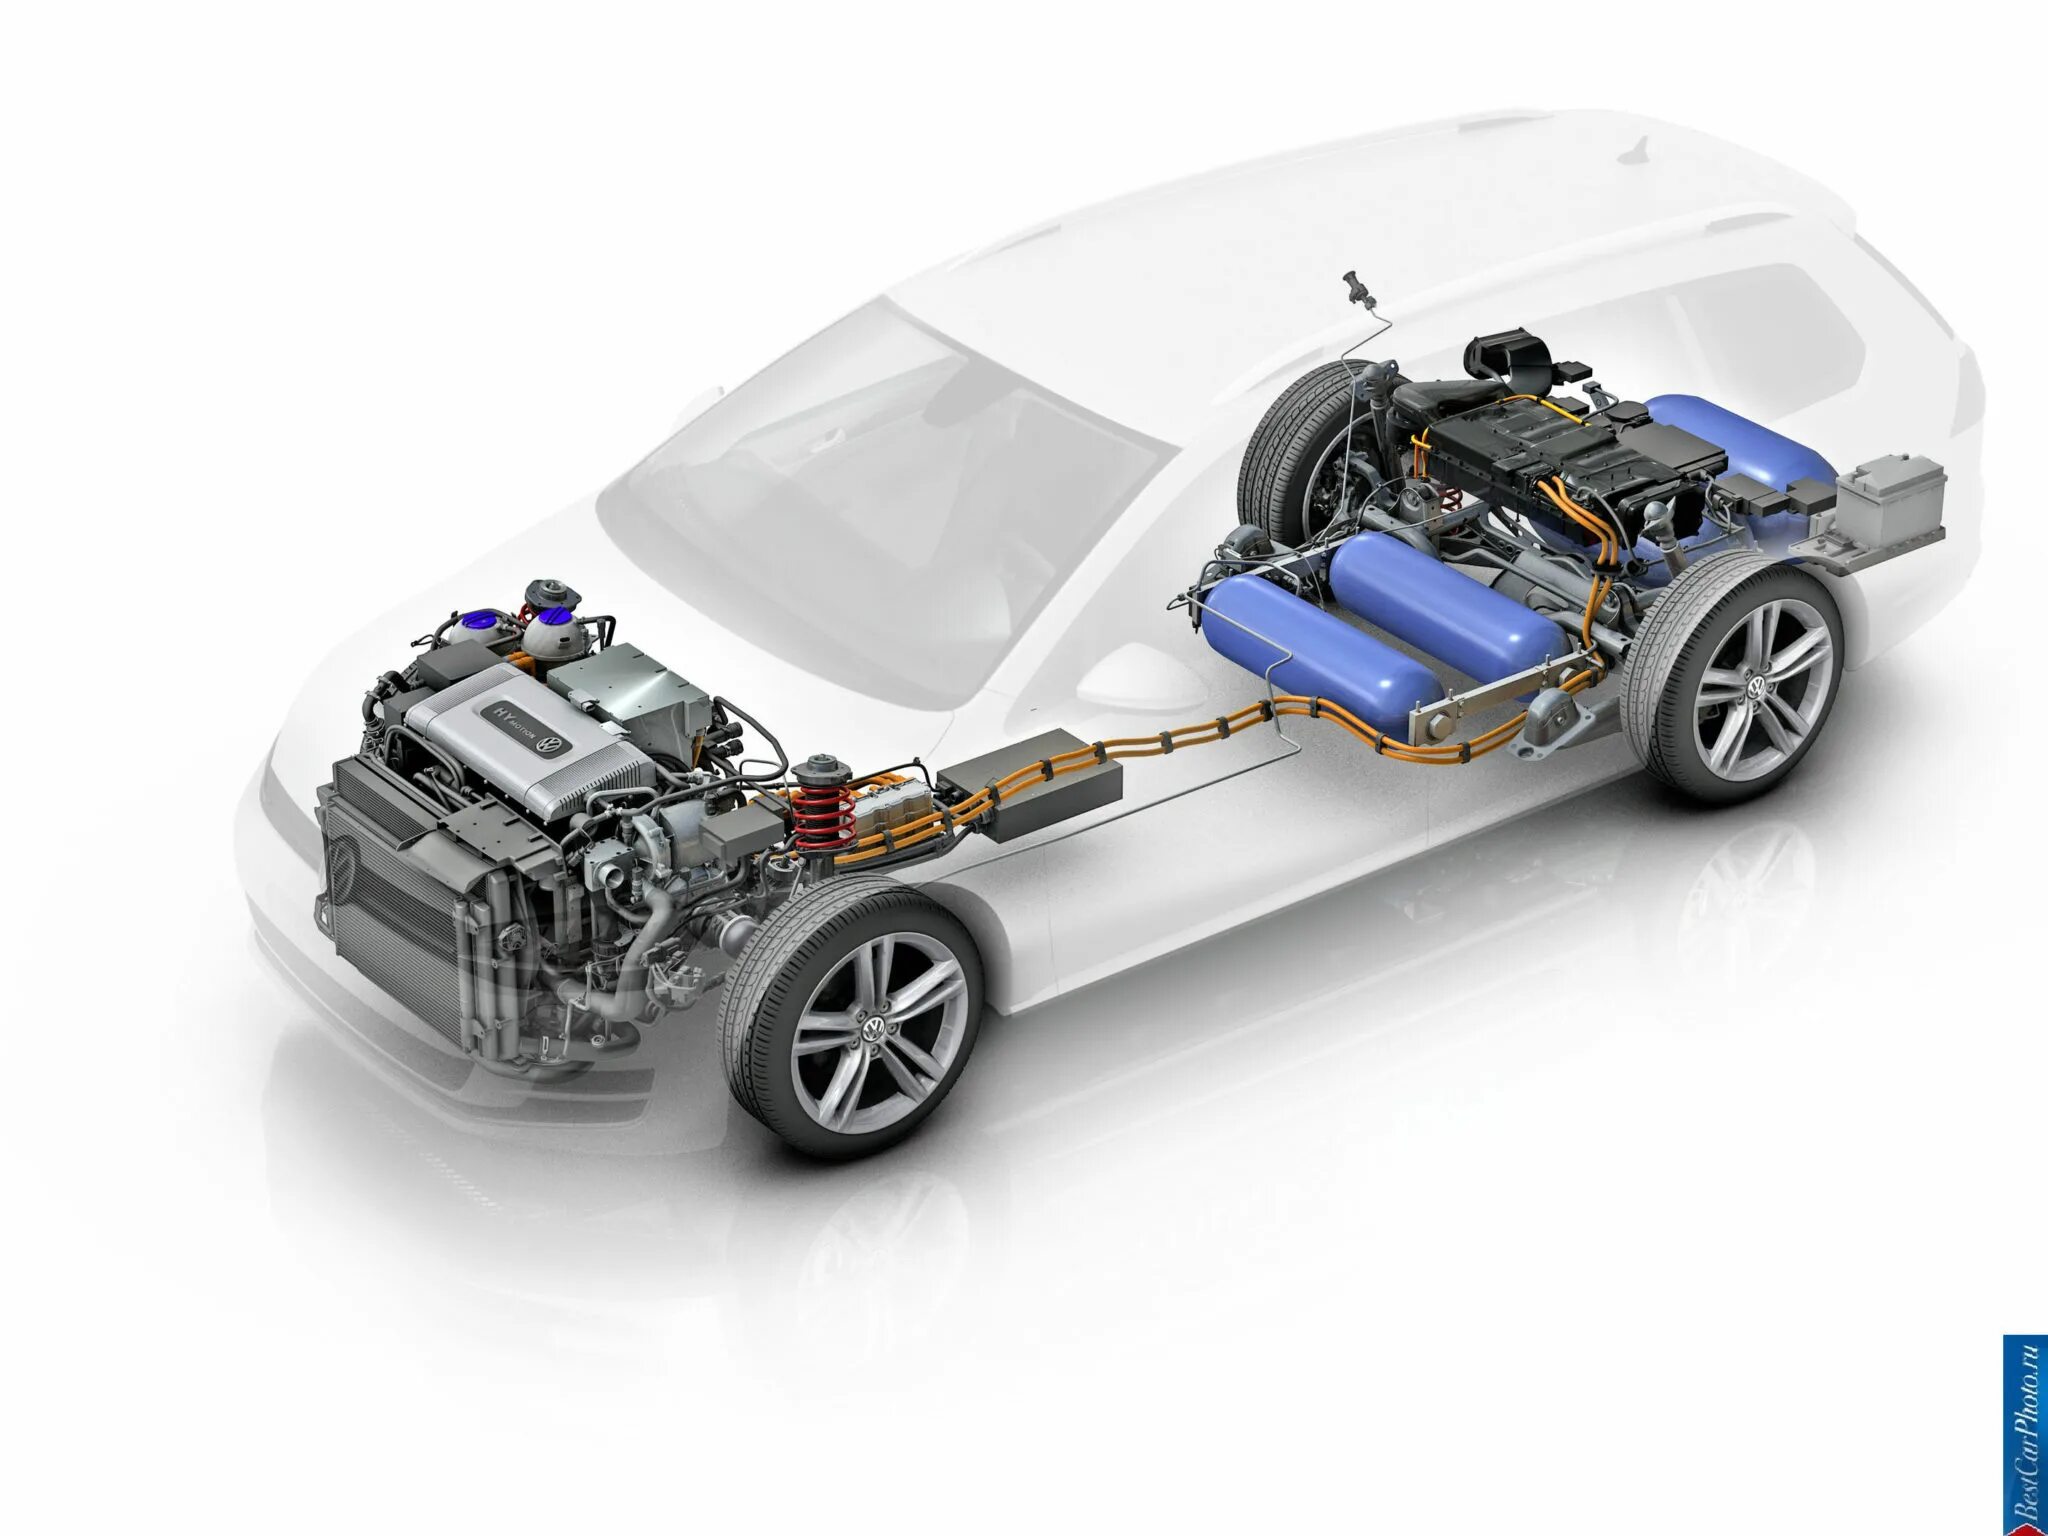 Топливо для двигателей автомобилей. Фольксваген водородный двигатель. Топливный элемент (hydrogen fuel Cell – водородный топливный элемент (ячейка). Водородный двигатель для автомобиля. Двигатели внутреннего сгорания на водородном топливе.